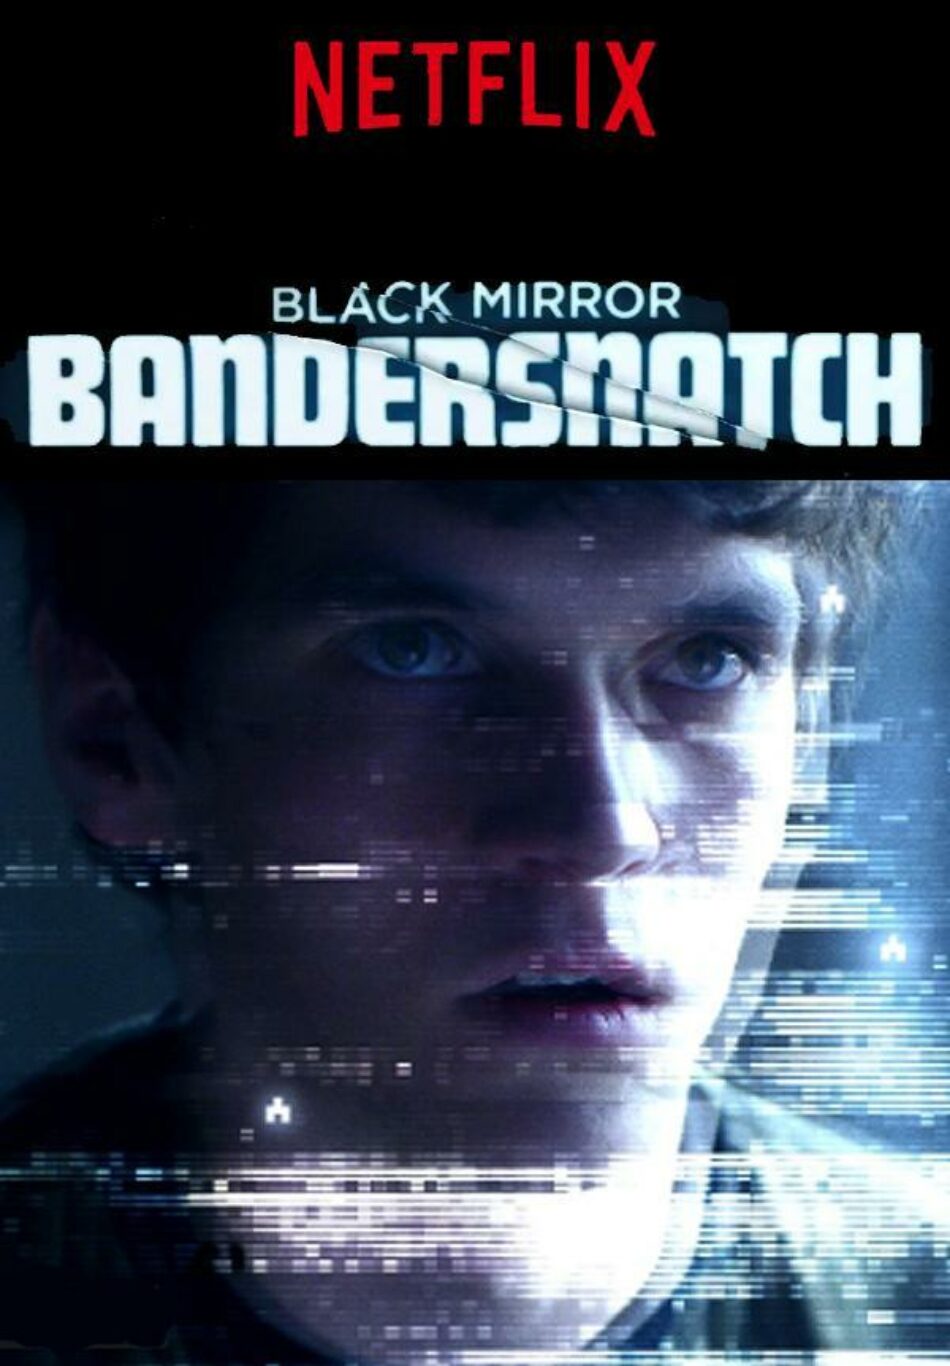 Lo siguiente de «Back Mirror», una película interactiva: «Bandersnatch»